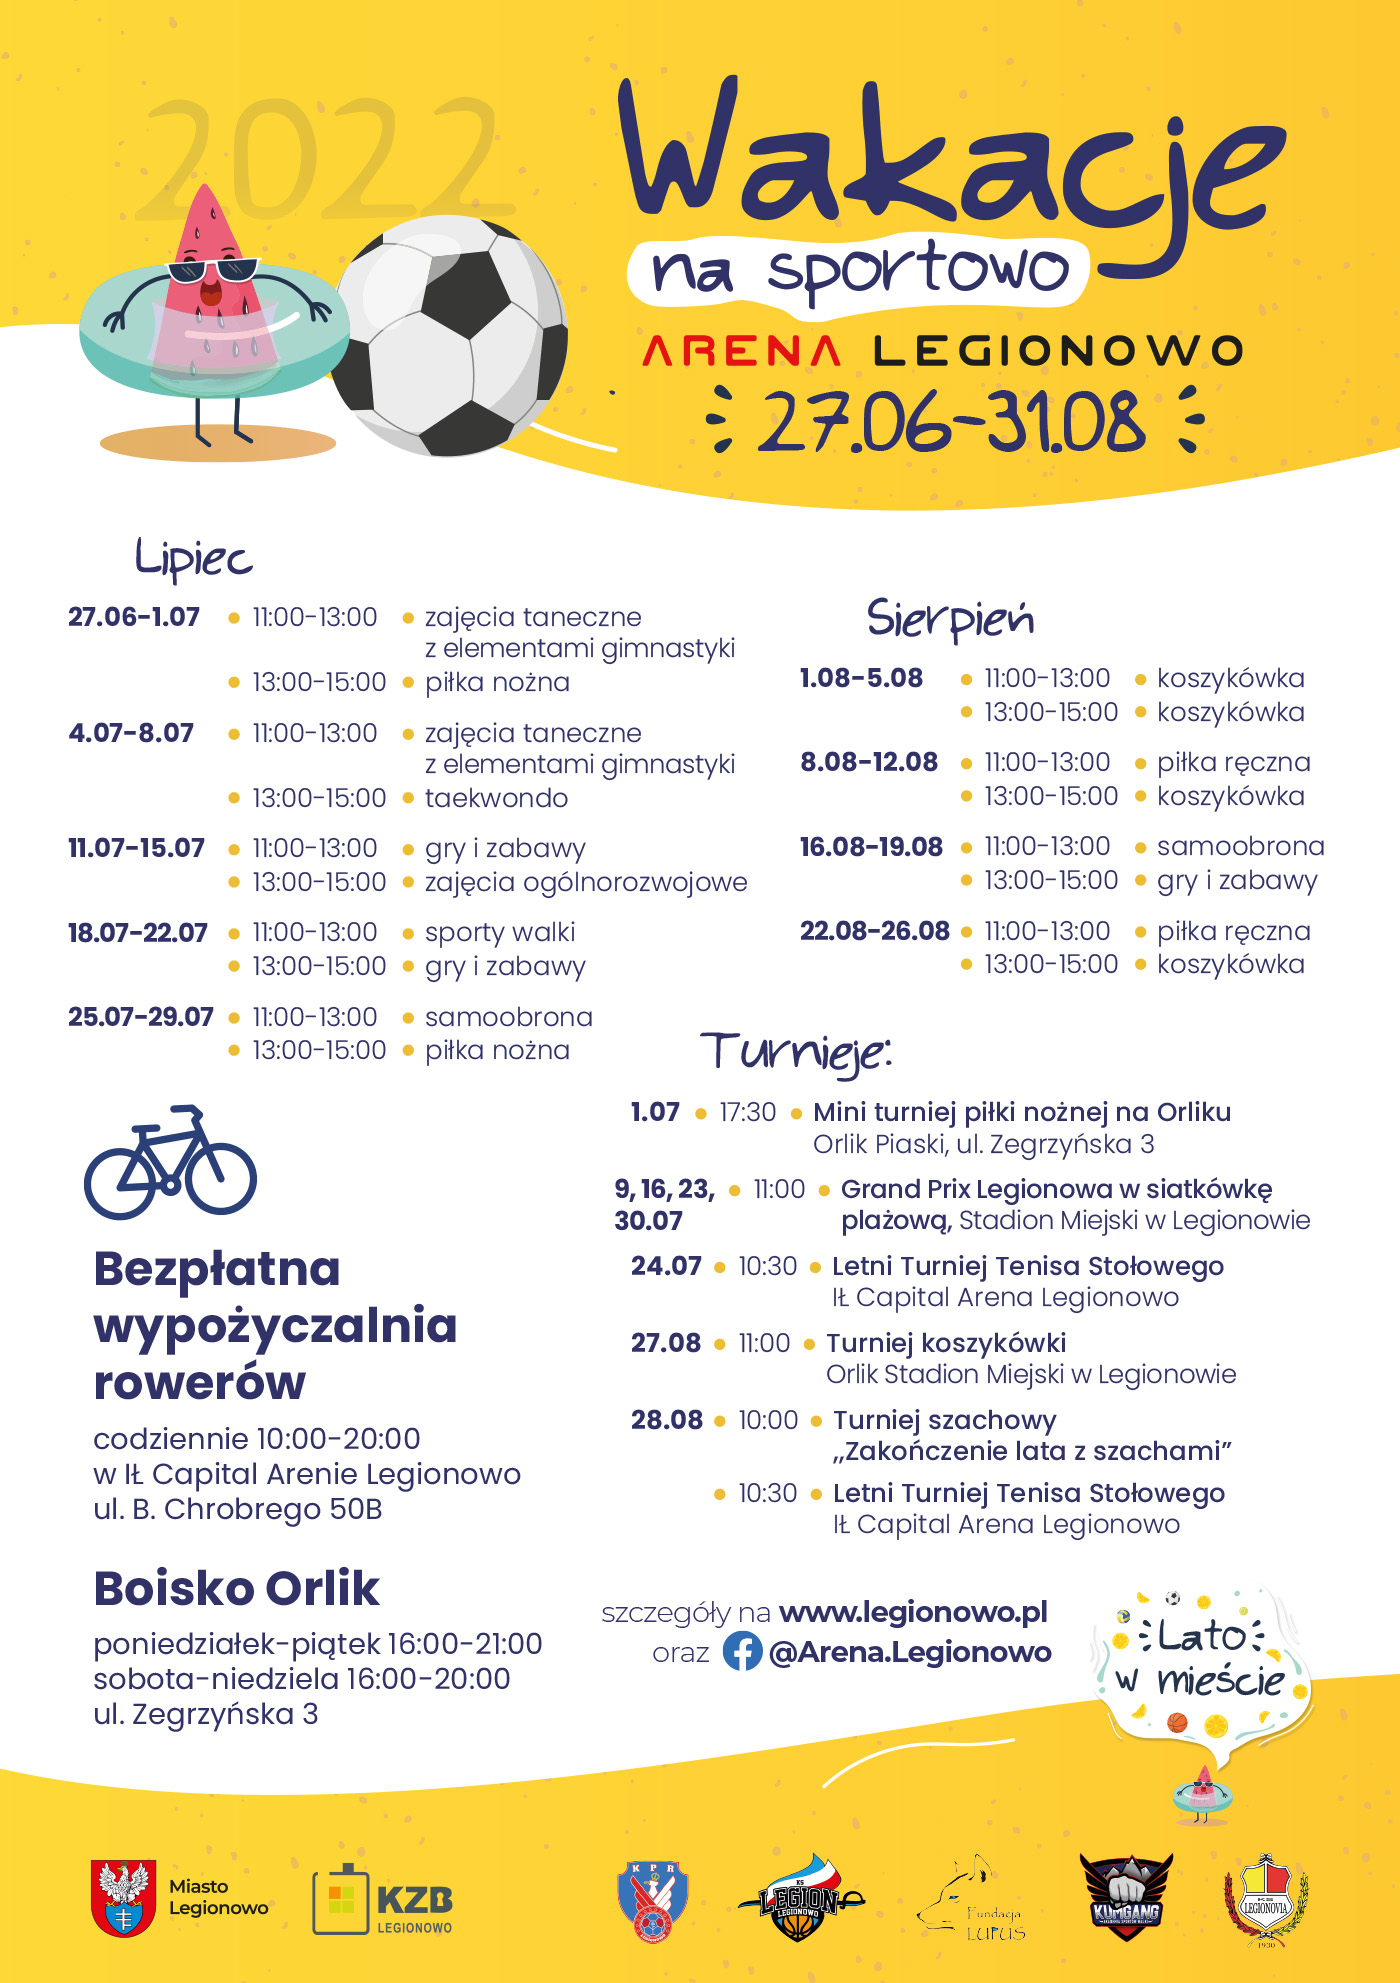 Plakat z informacjami o wakacjach na sportowo 2022 w Legionowie